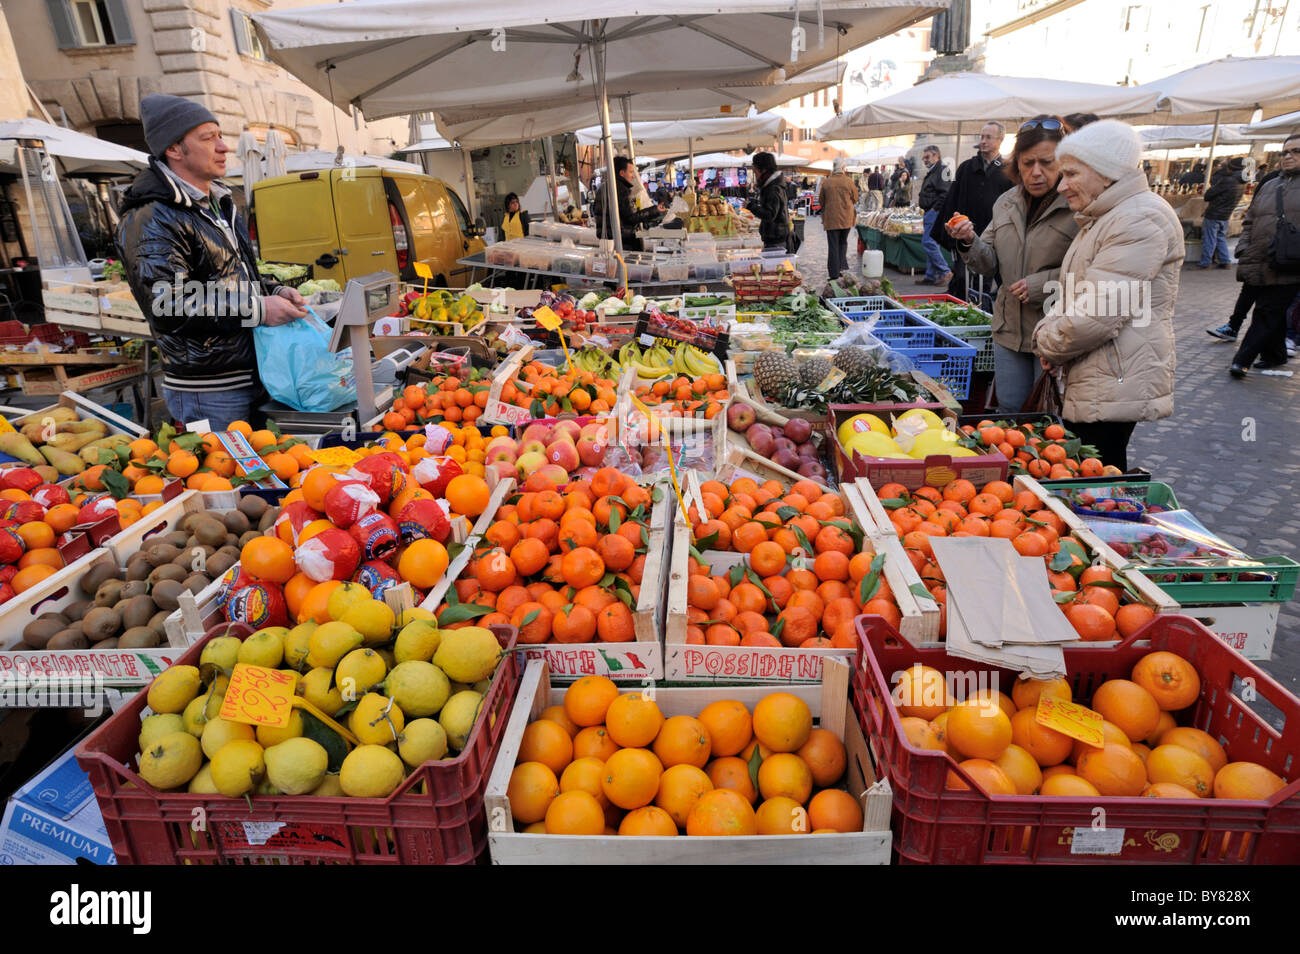 Italy, Rome, Campo de' Fiori, food market stalls Stock Photo